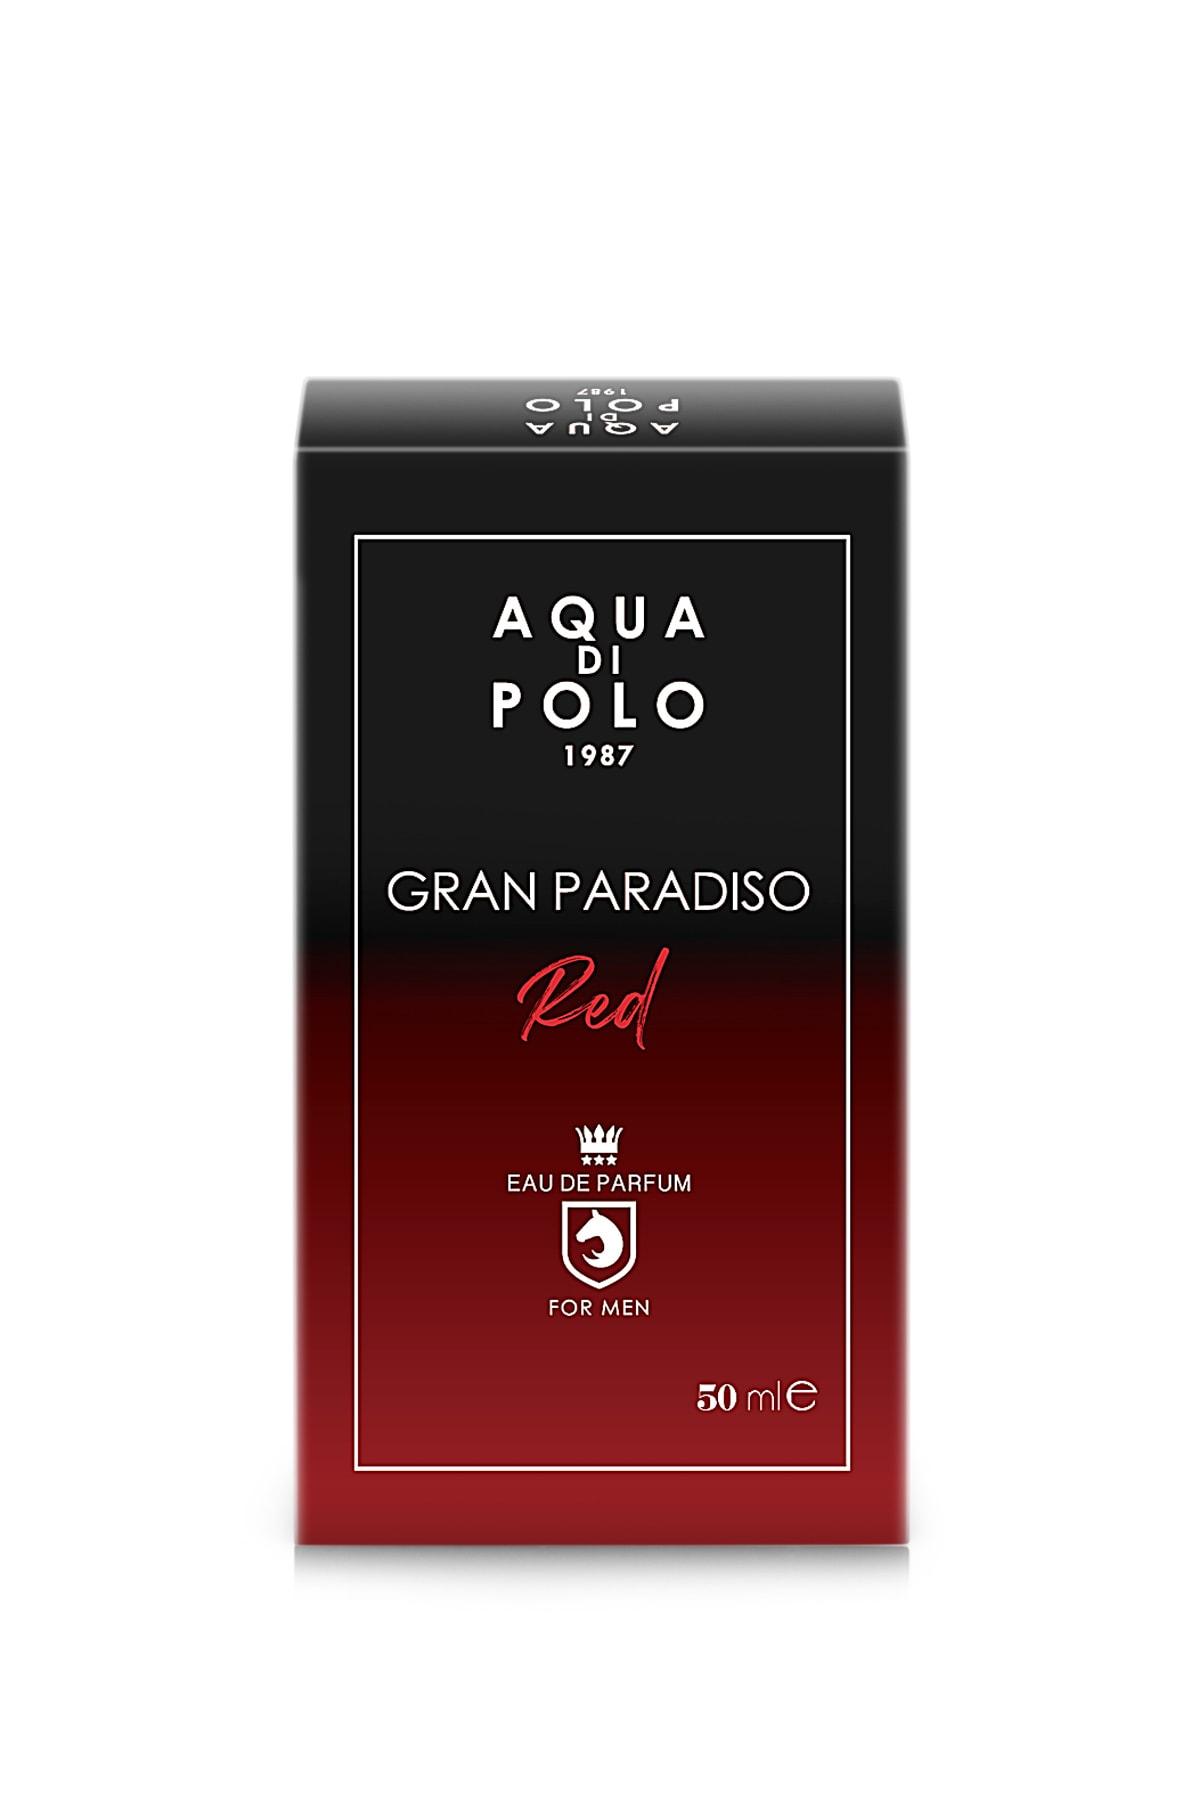 ادوپرفیوم مردانه Aqua Di Polo 1987 مدل Gran Paradiso Red کد.1005